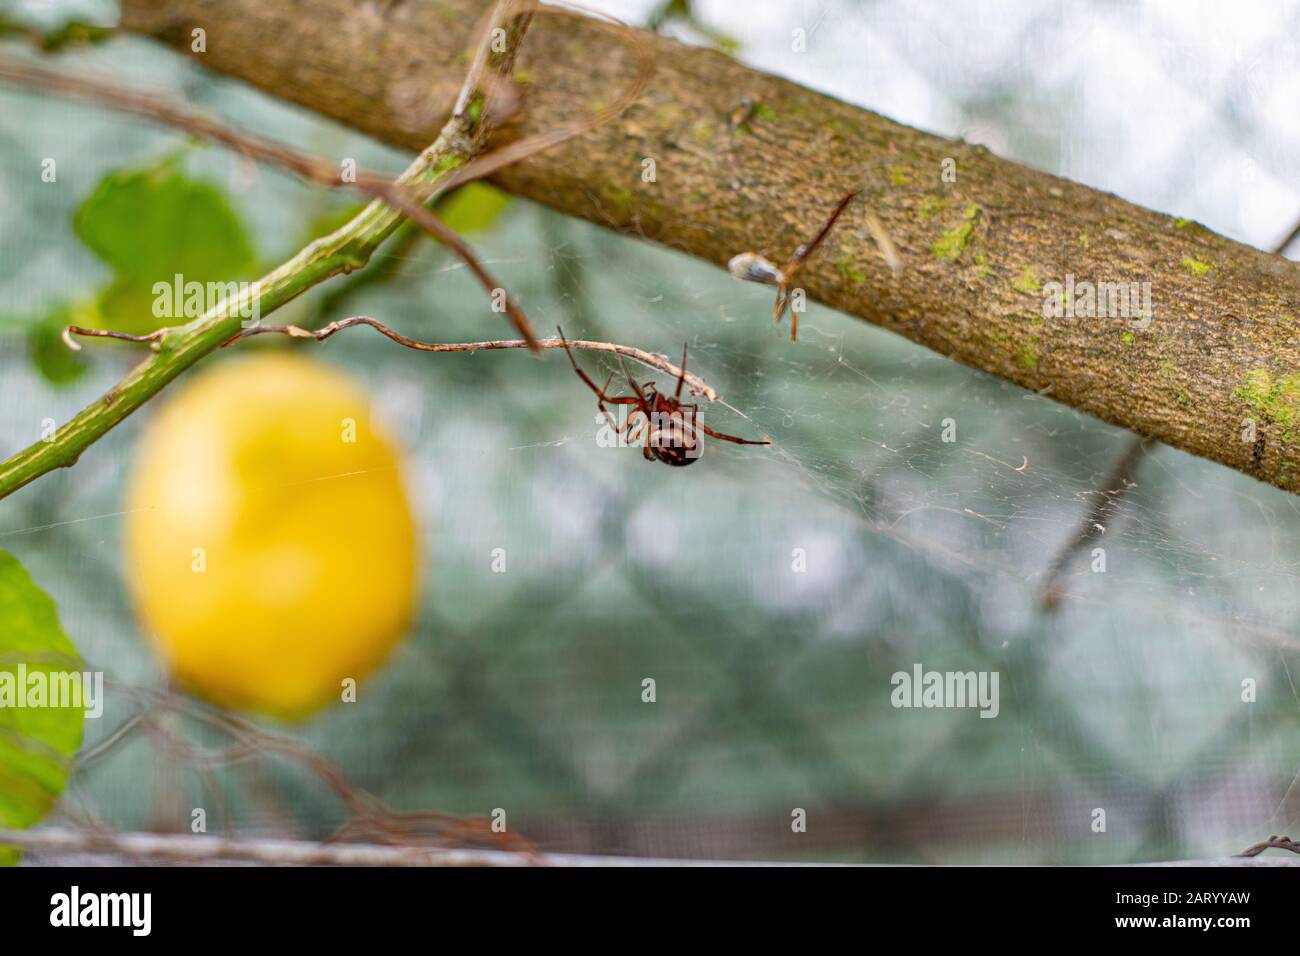 Noble y falsa araña viuda en Portugal Steatoda nobilis Foto de stock